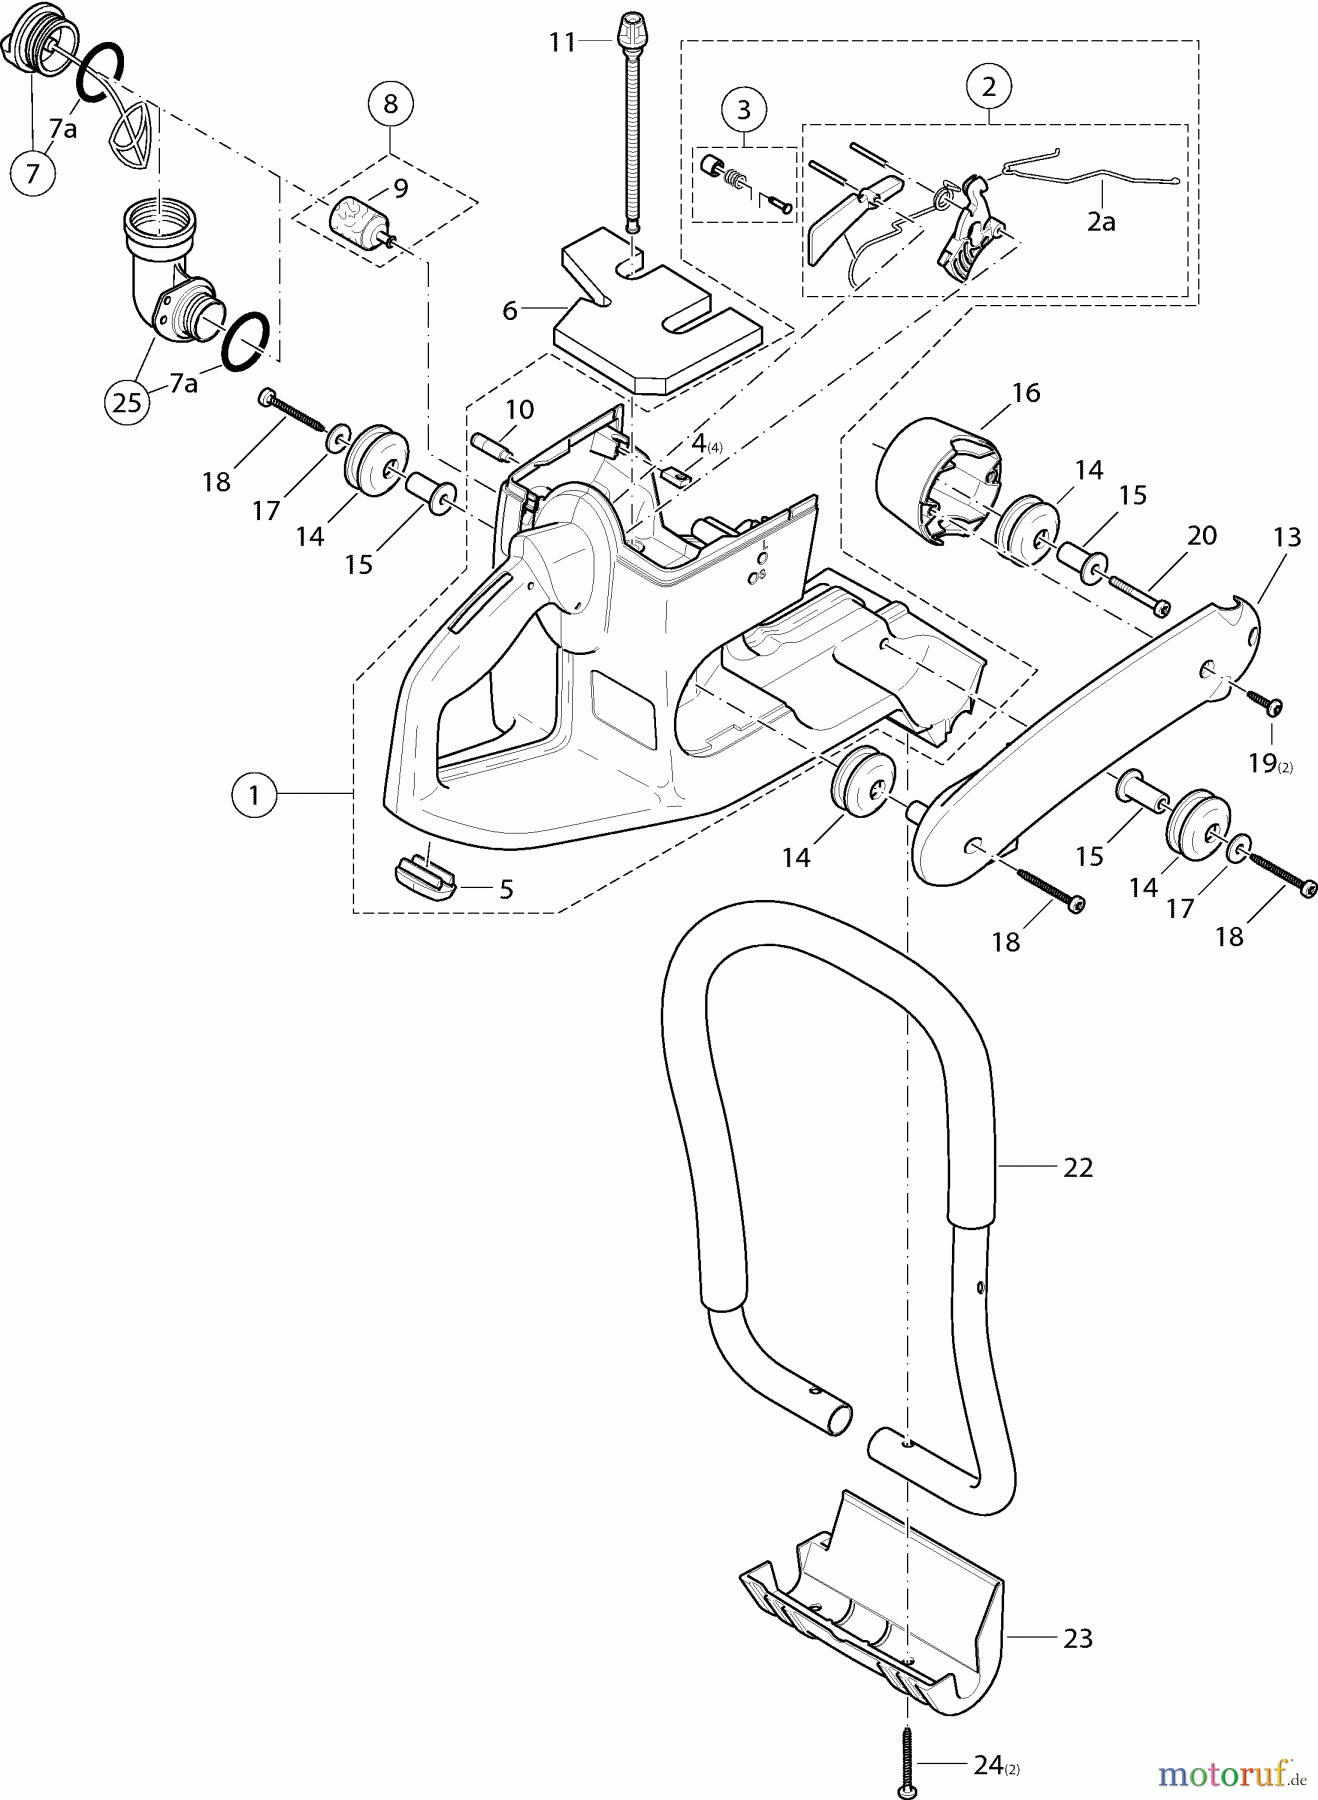  Dolmar Trennschleifer Benzin PC-6214 2  Tankeinheit und Handgriffe